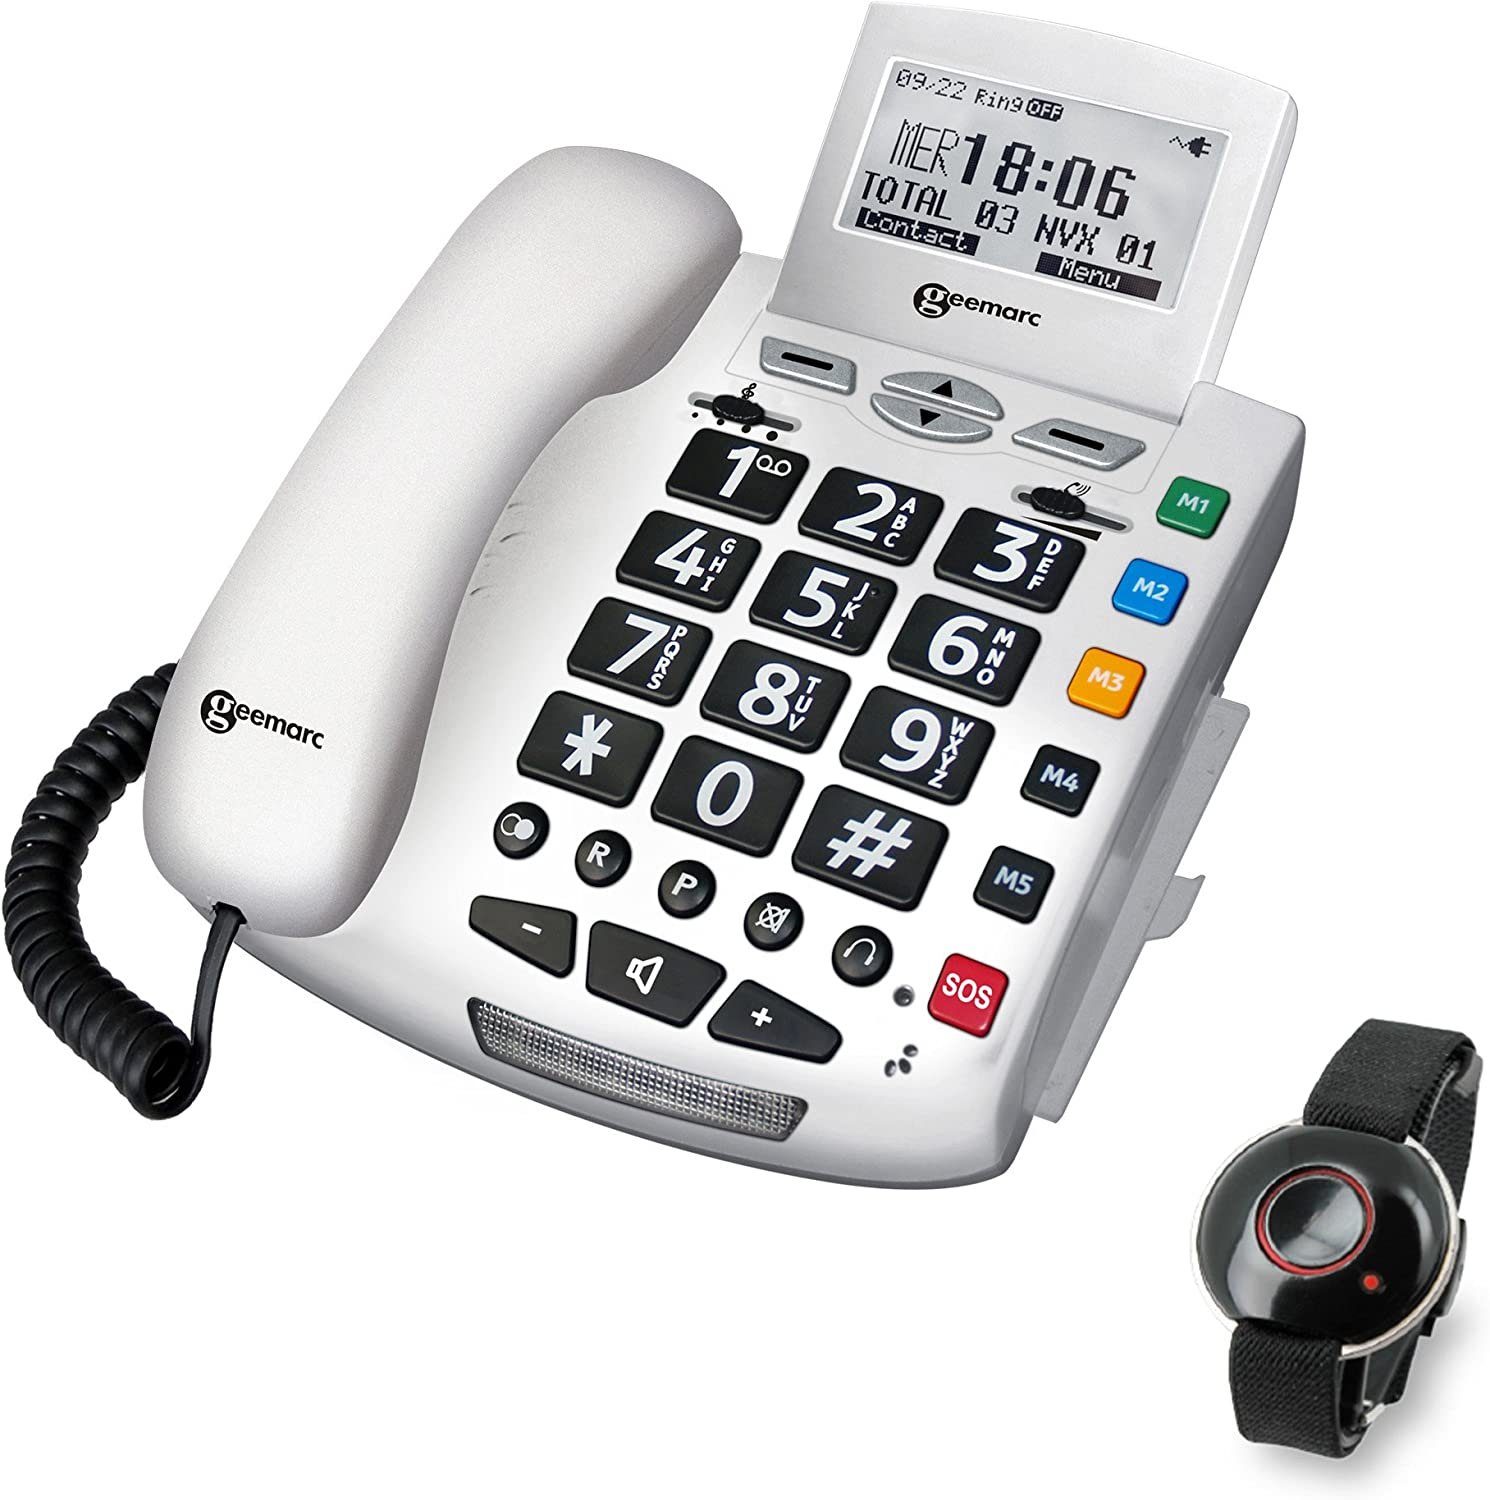 Geemarc Geemarc Notfallschutztelefon Seniorentelefon SERENITIES mit Sprachansage